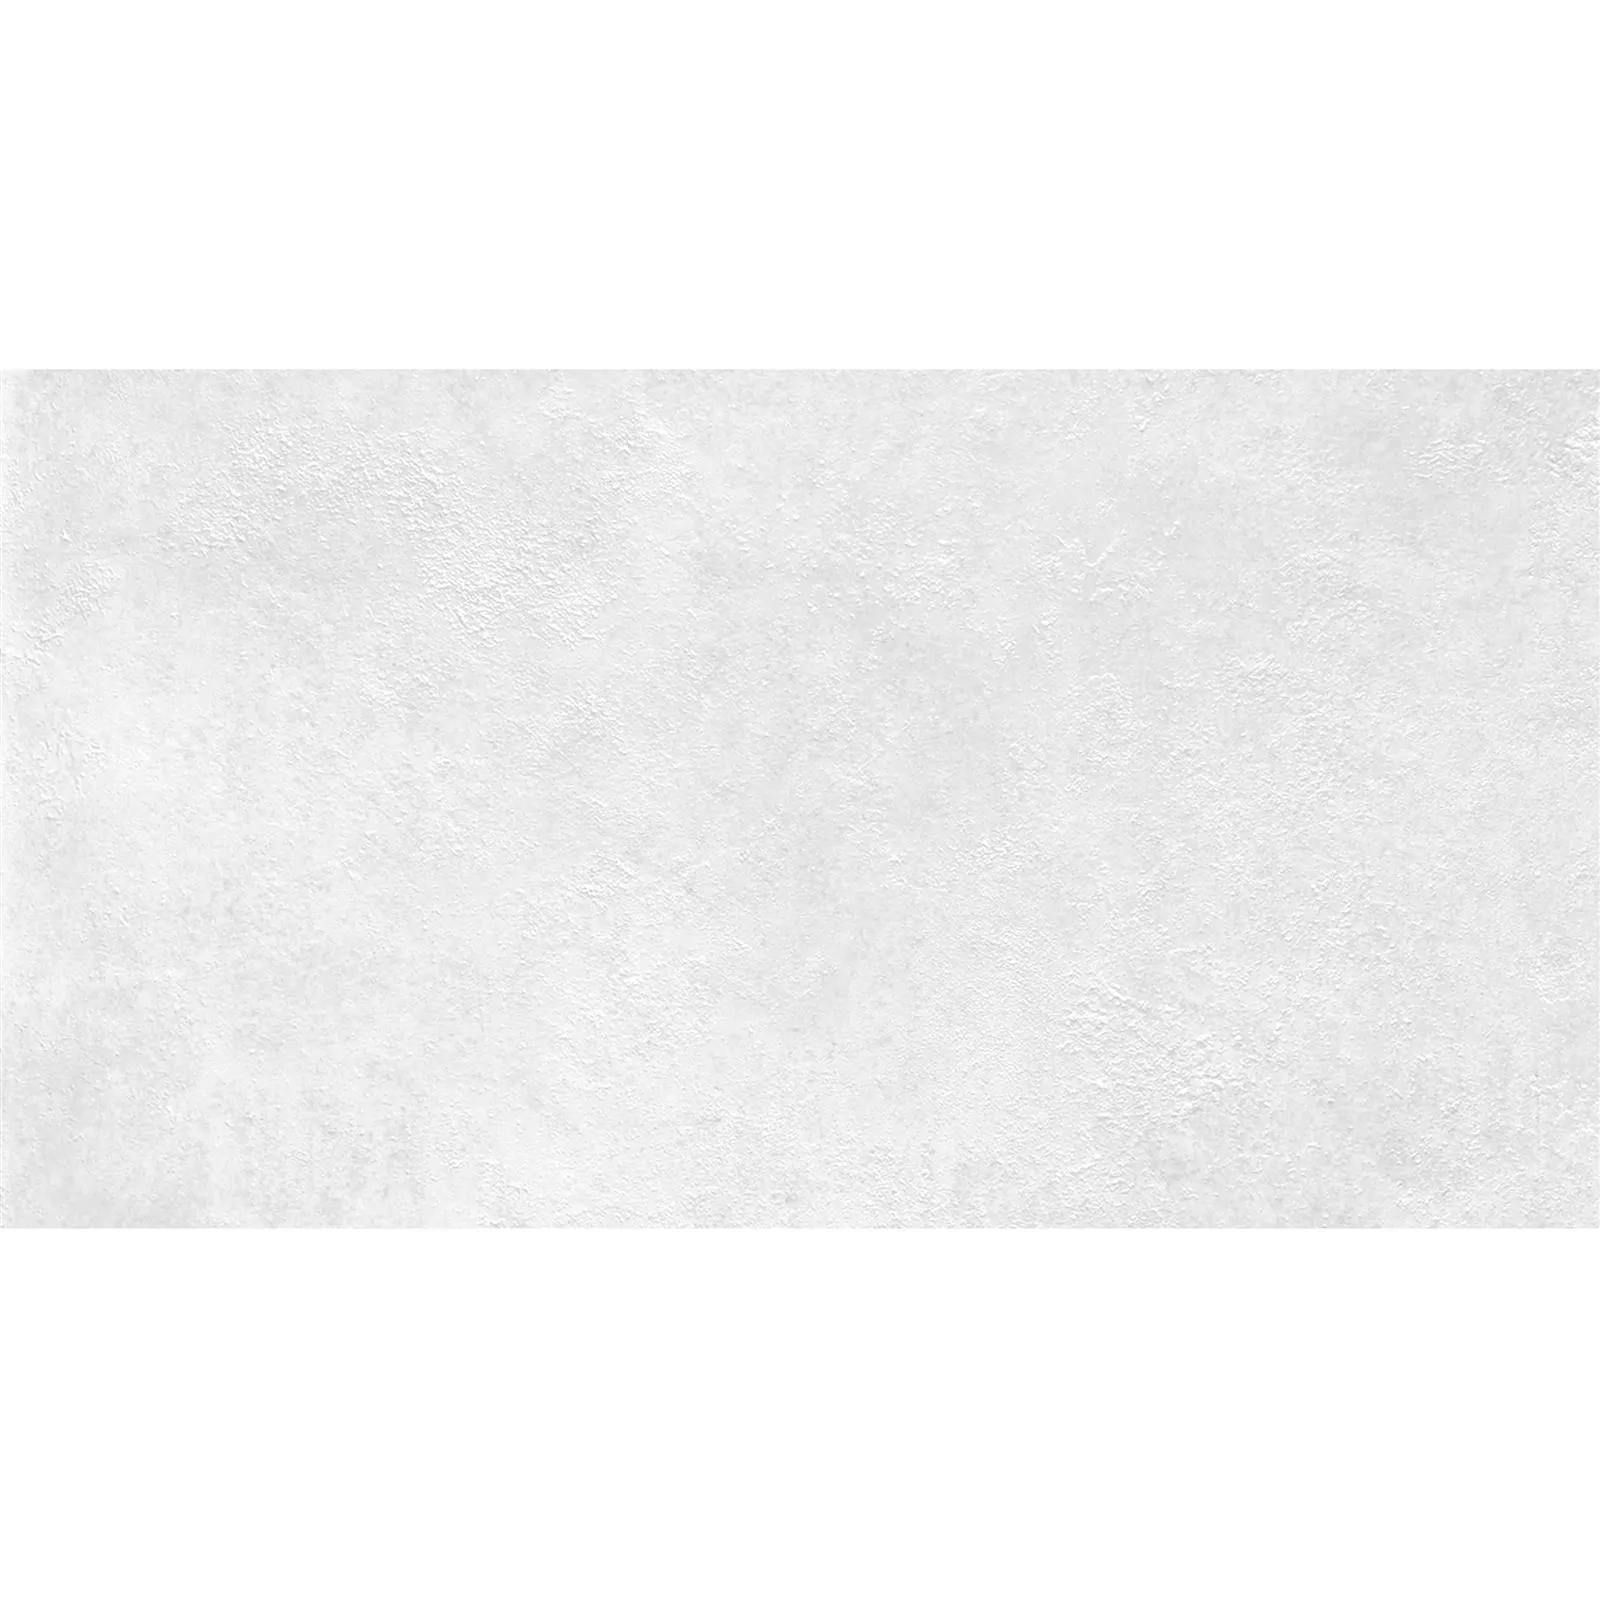 Πλακάκια Tοίχου Alexander Πέτρινη Όψη Ασπρο 30x60cm